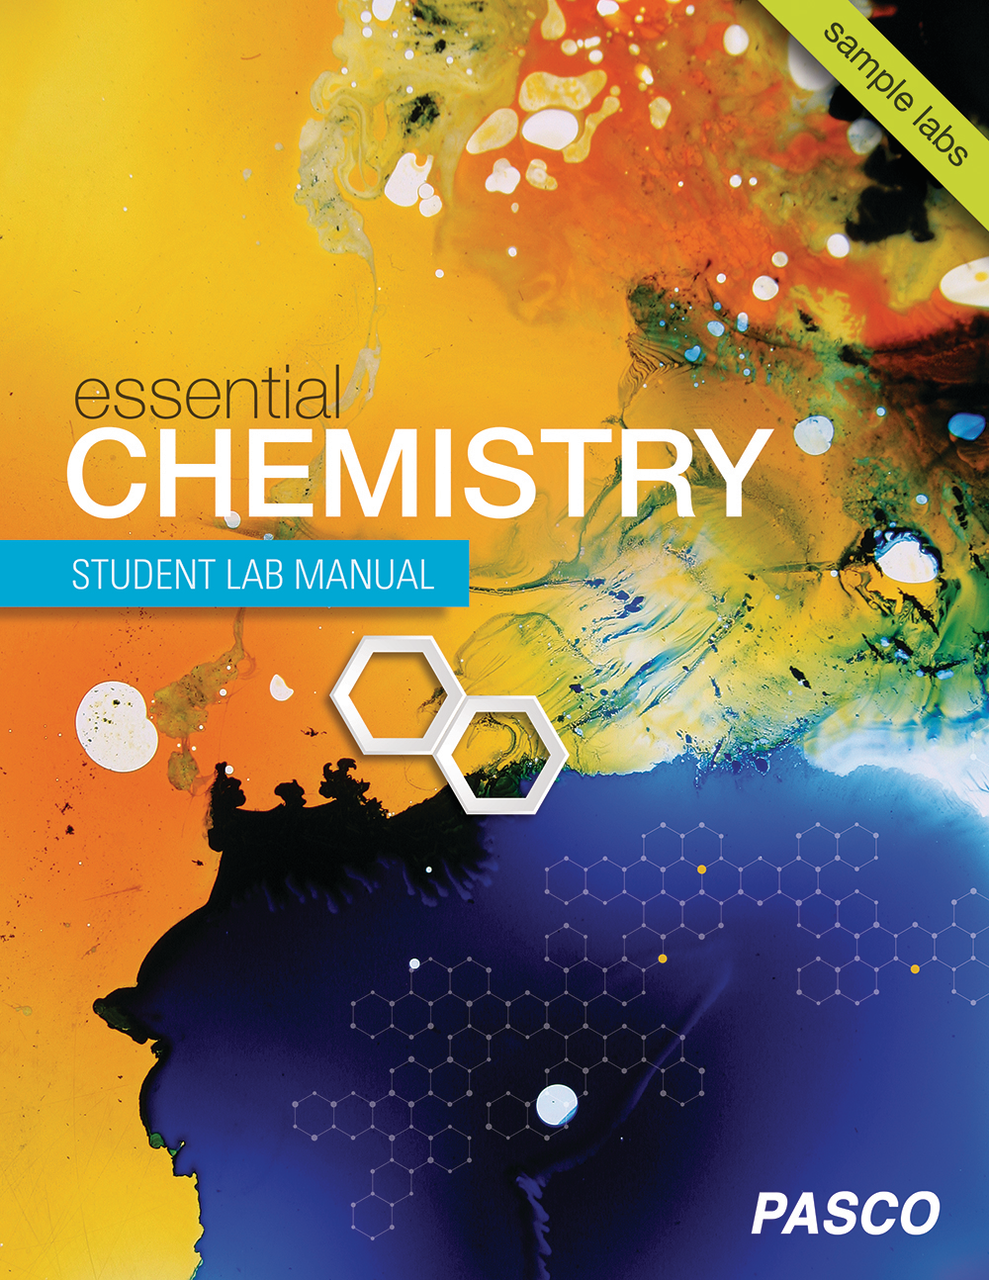 “Essential Chemistry Student Lab Manual” - leermiddelen voor het onderwijs